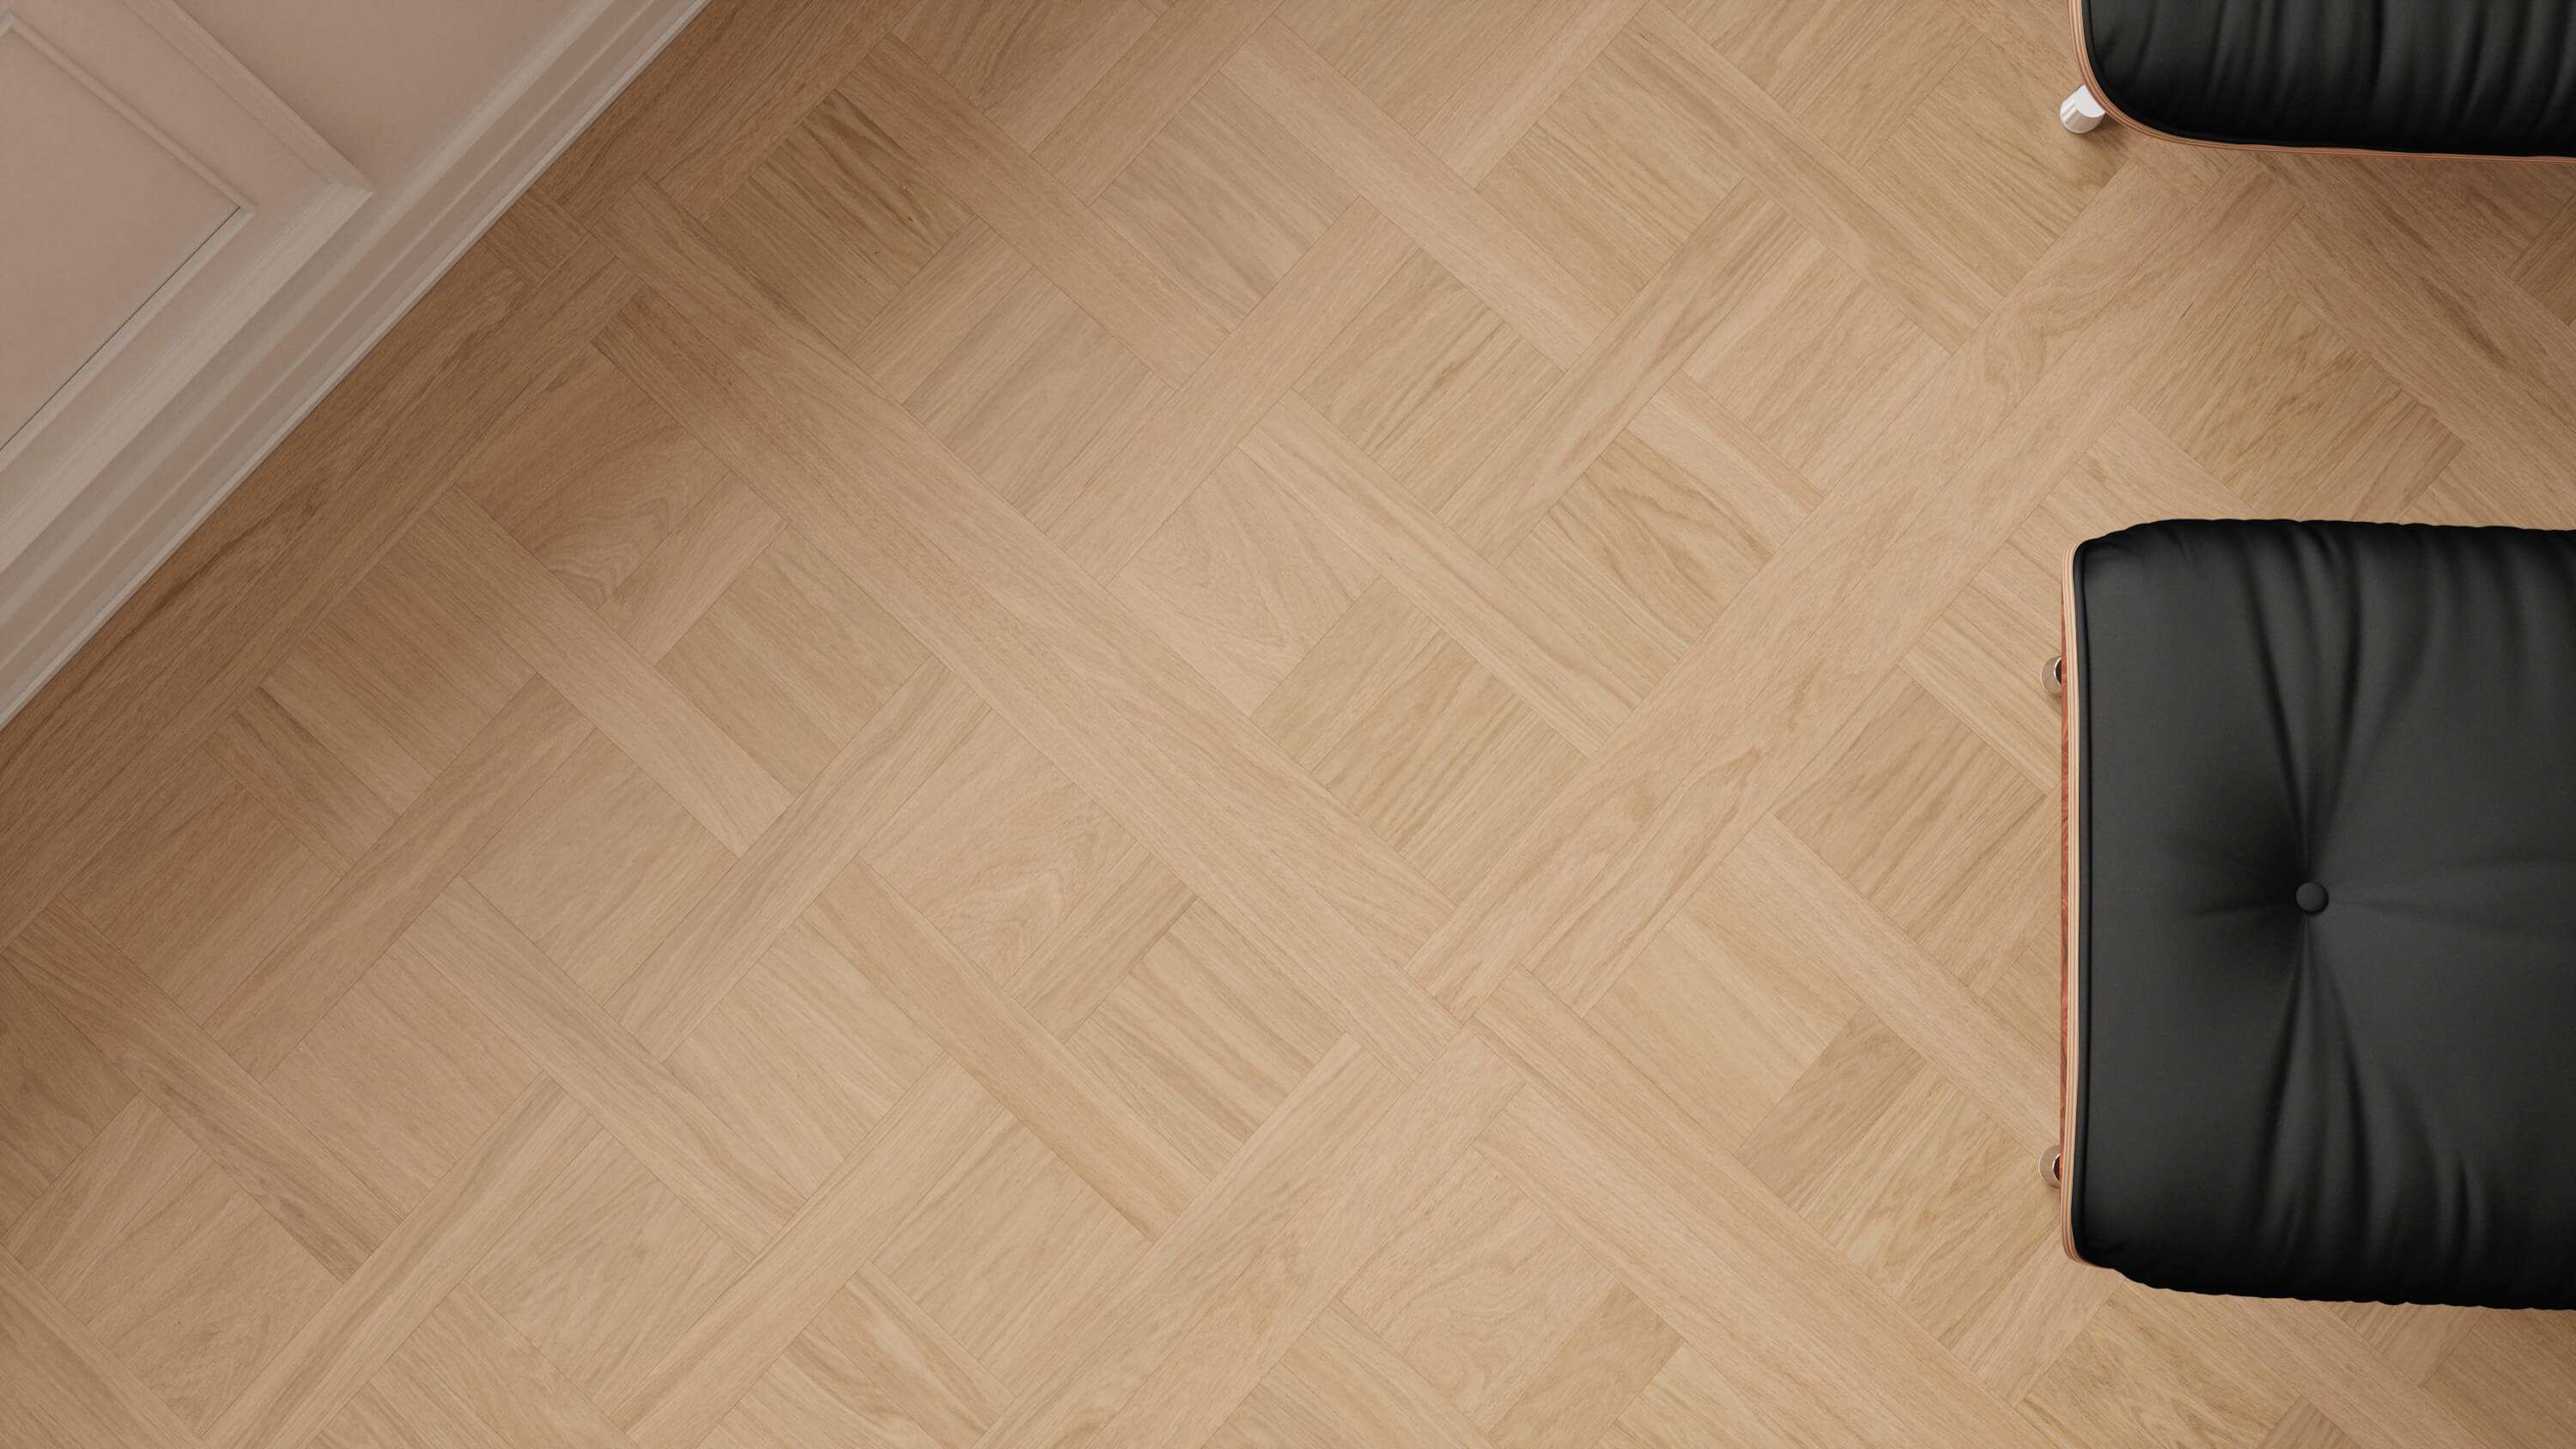 seamless oak wood floor texture high resolution